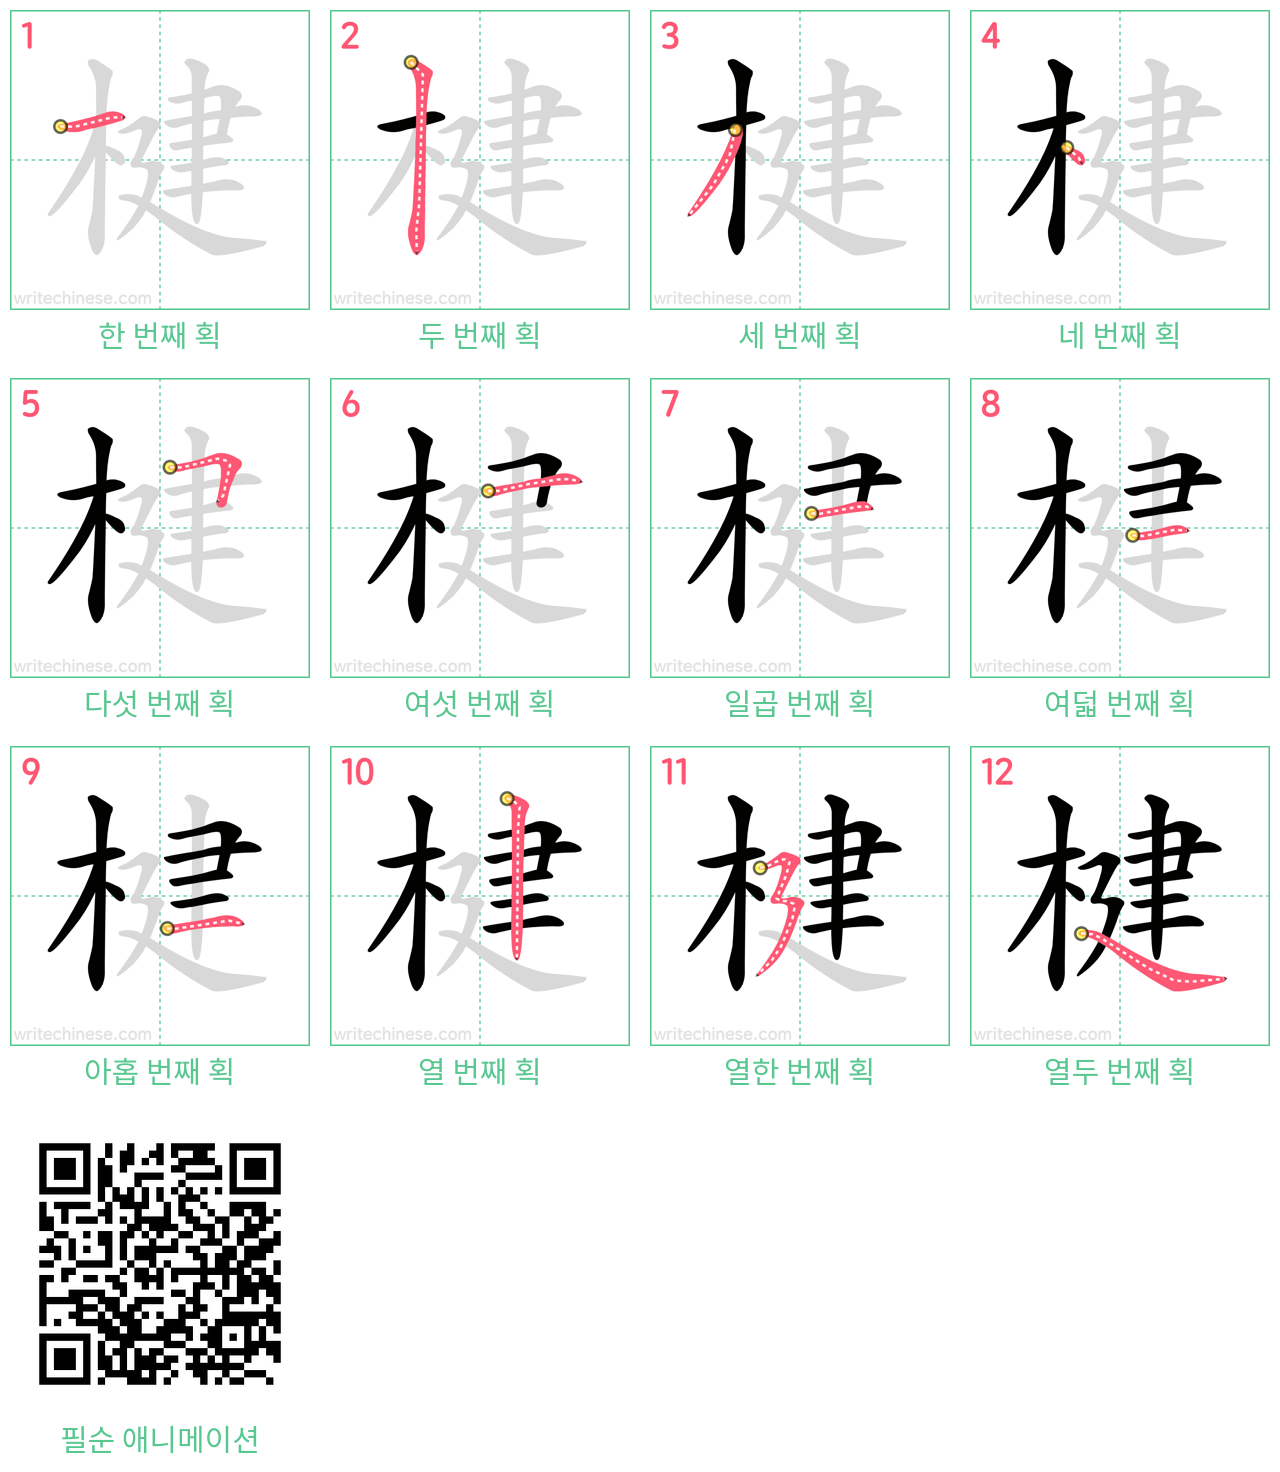 楗 step-by-step stroke order diagrams